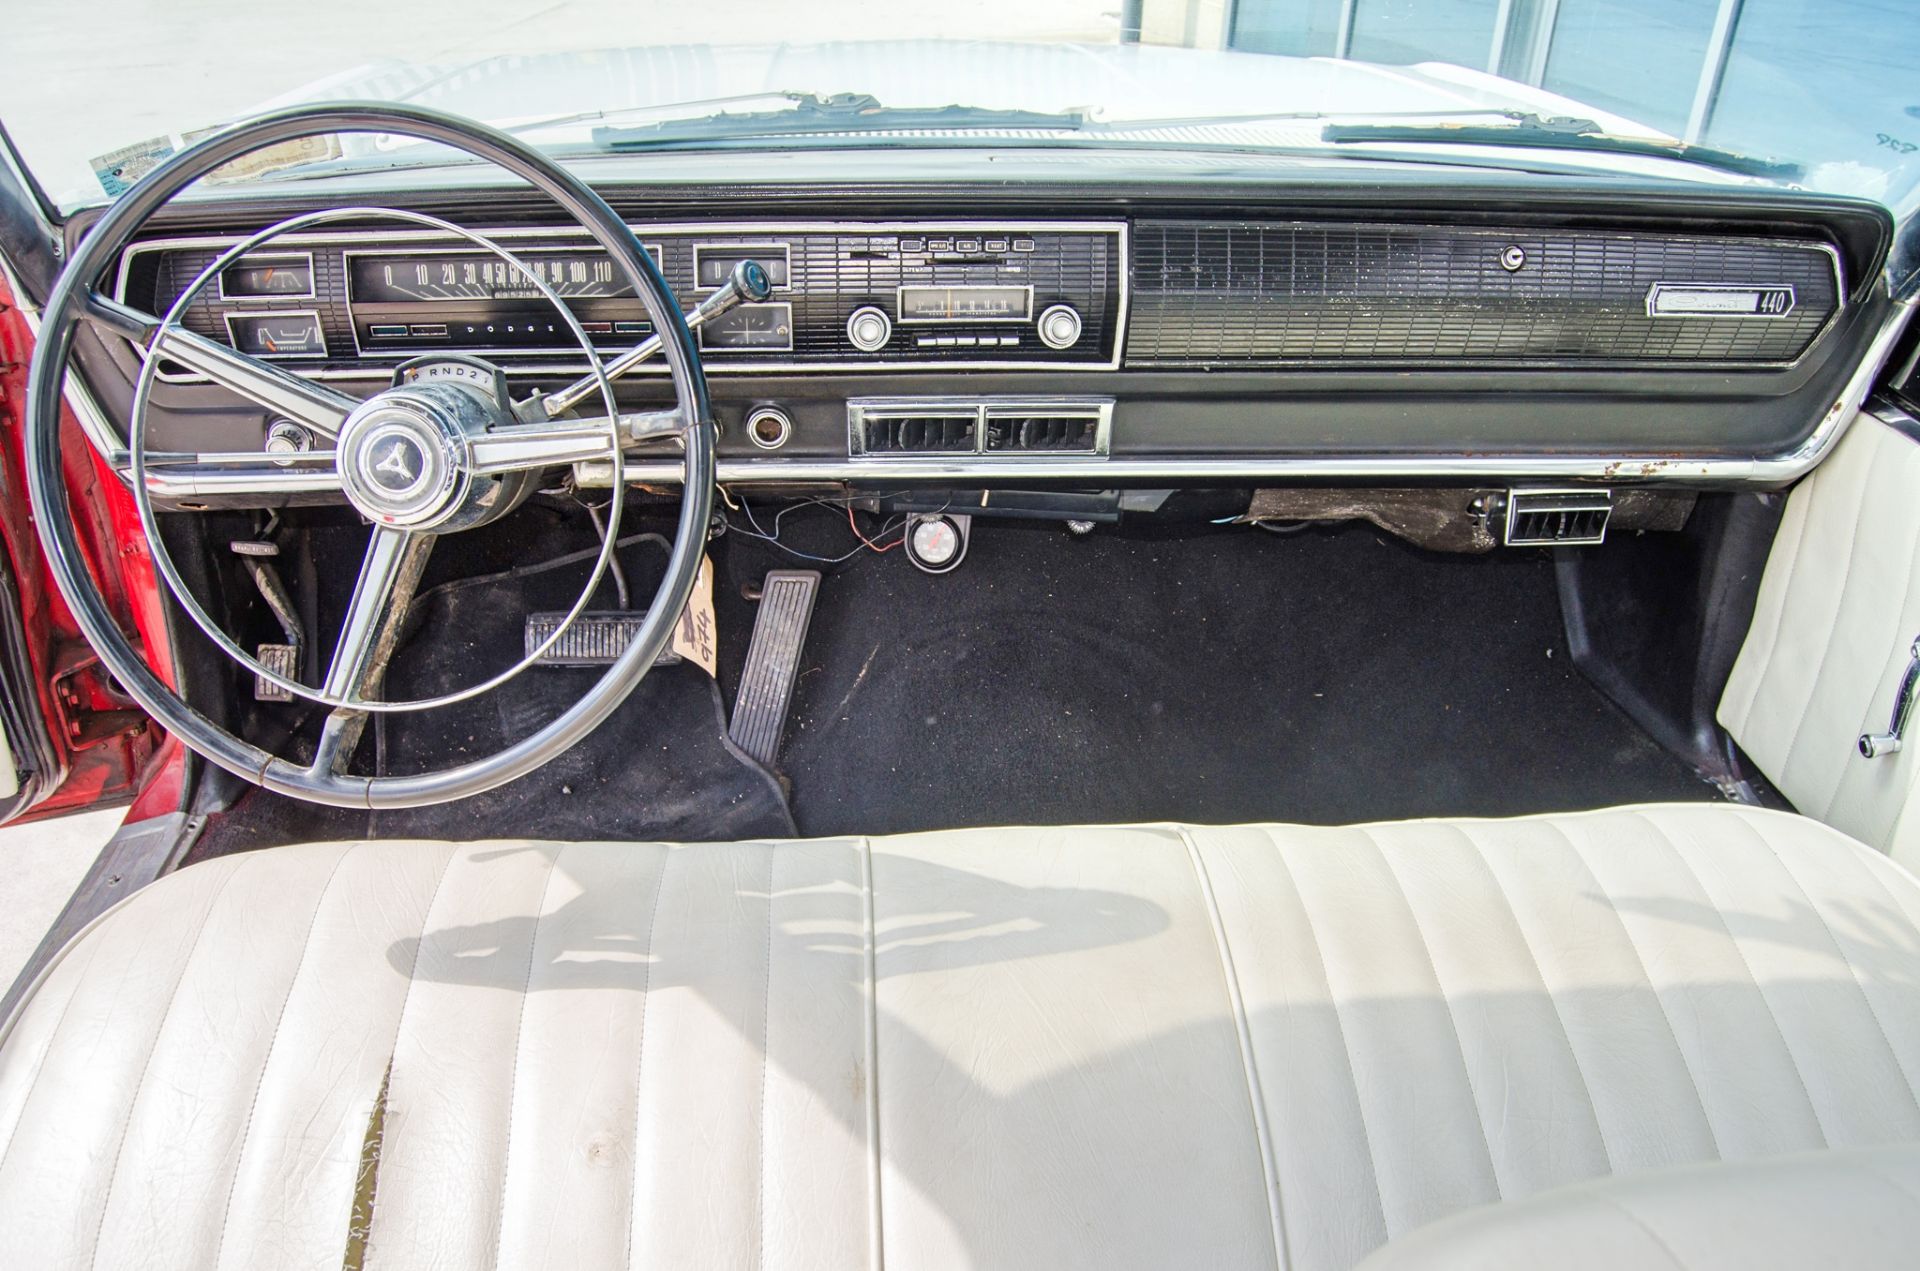 1967 Dodge Coronet 440 7.2 litre 2 door coupe - Image 42 of 54